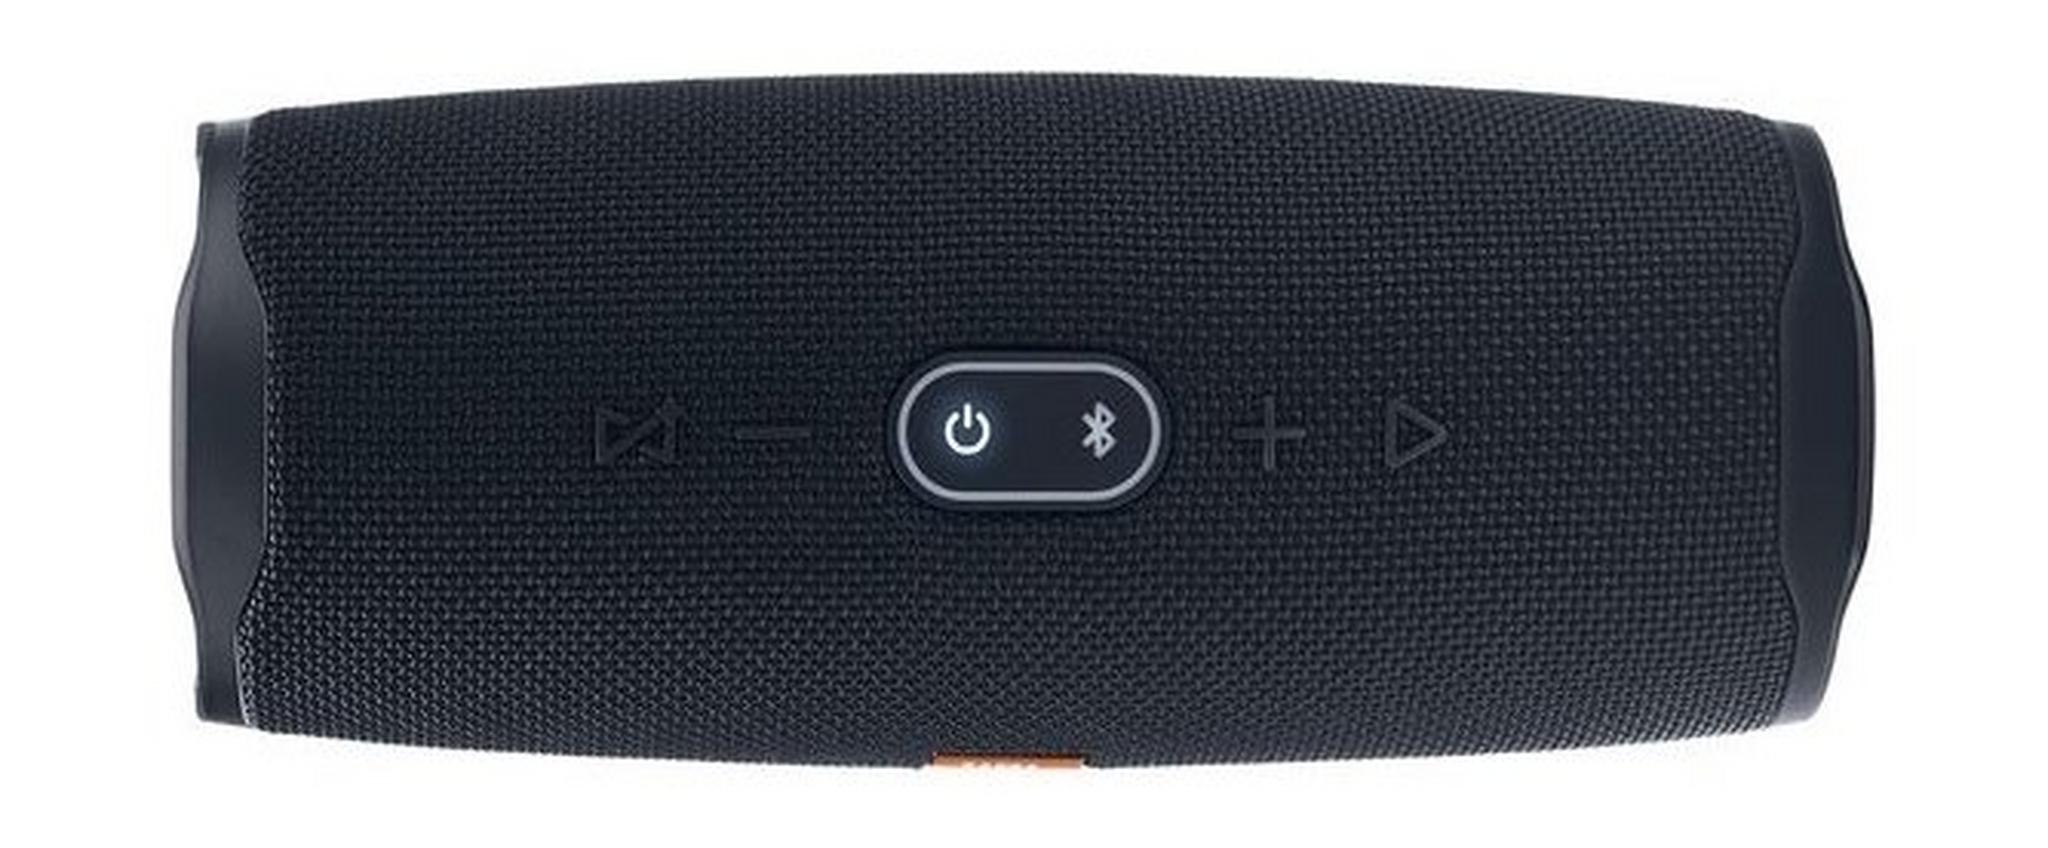 JBL Charge 4 Waterproof Portable Bluetooth Speaker - Black